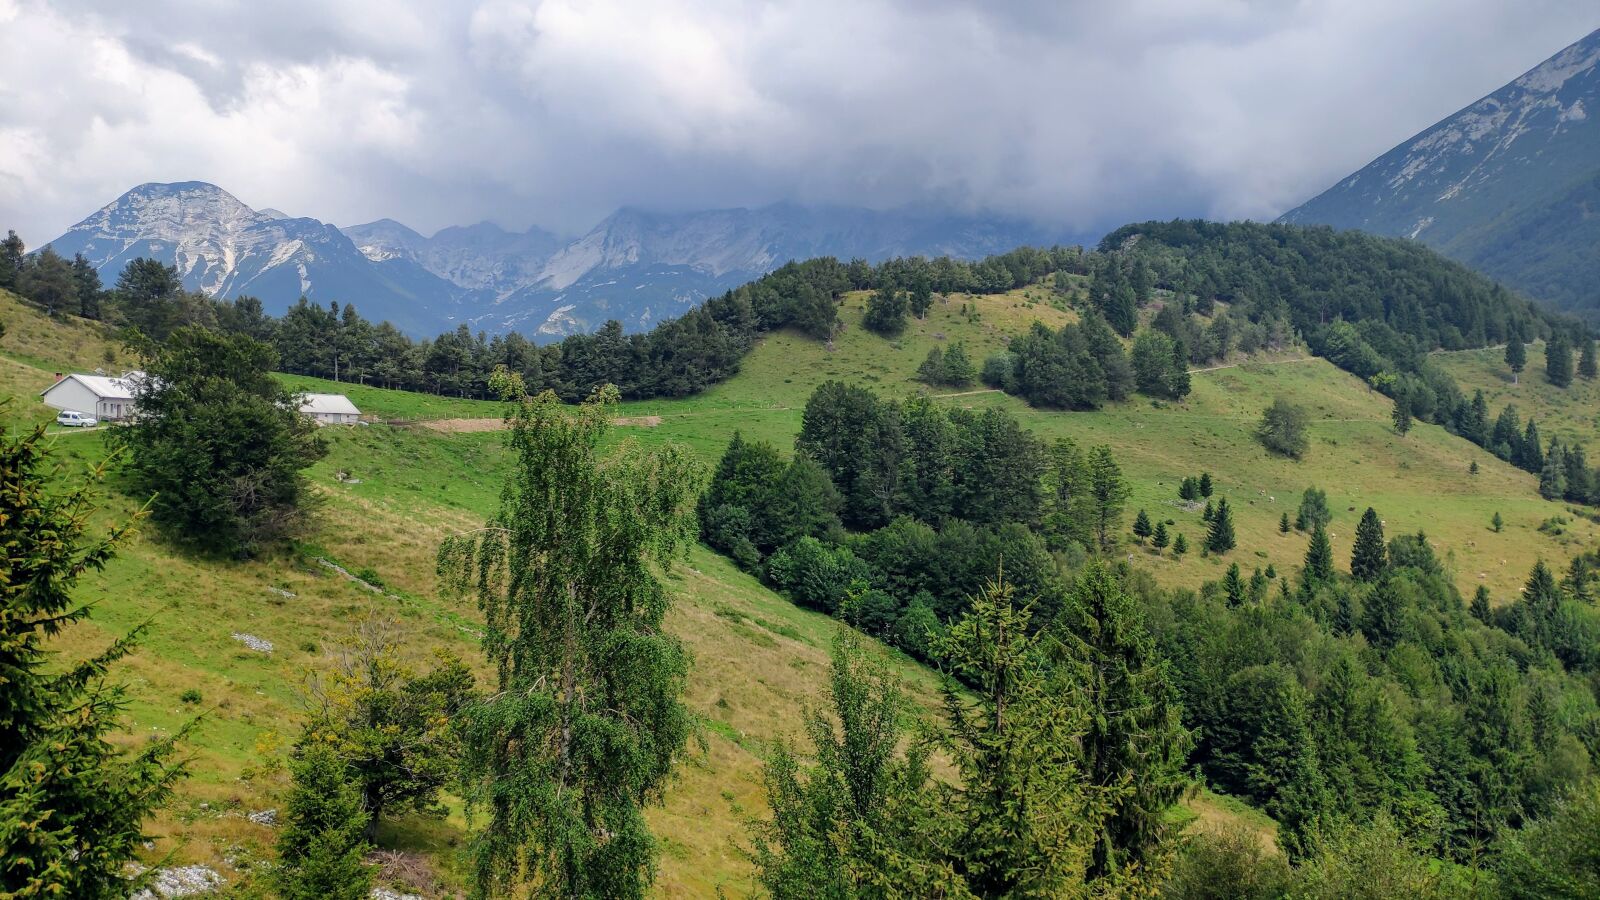 Xiaomi MI 8 sample photo. Mountains, trees, mountainous photography